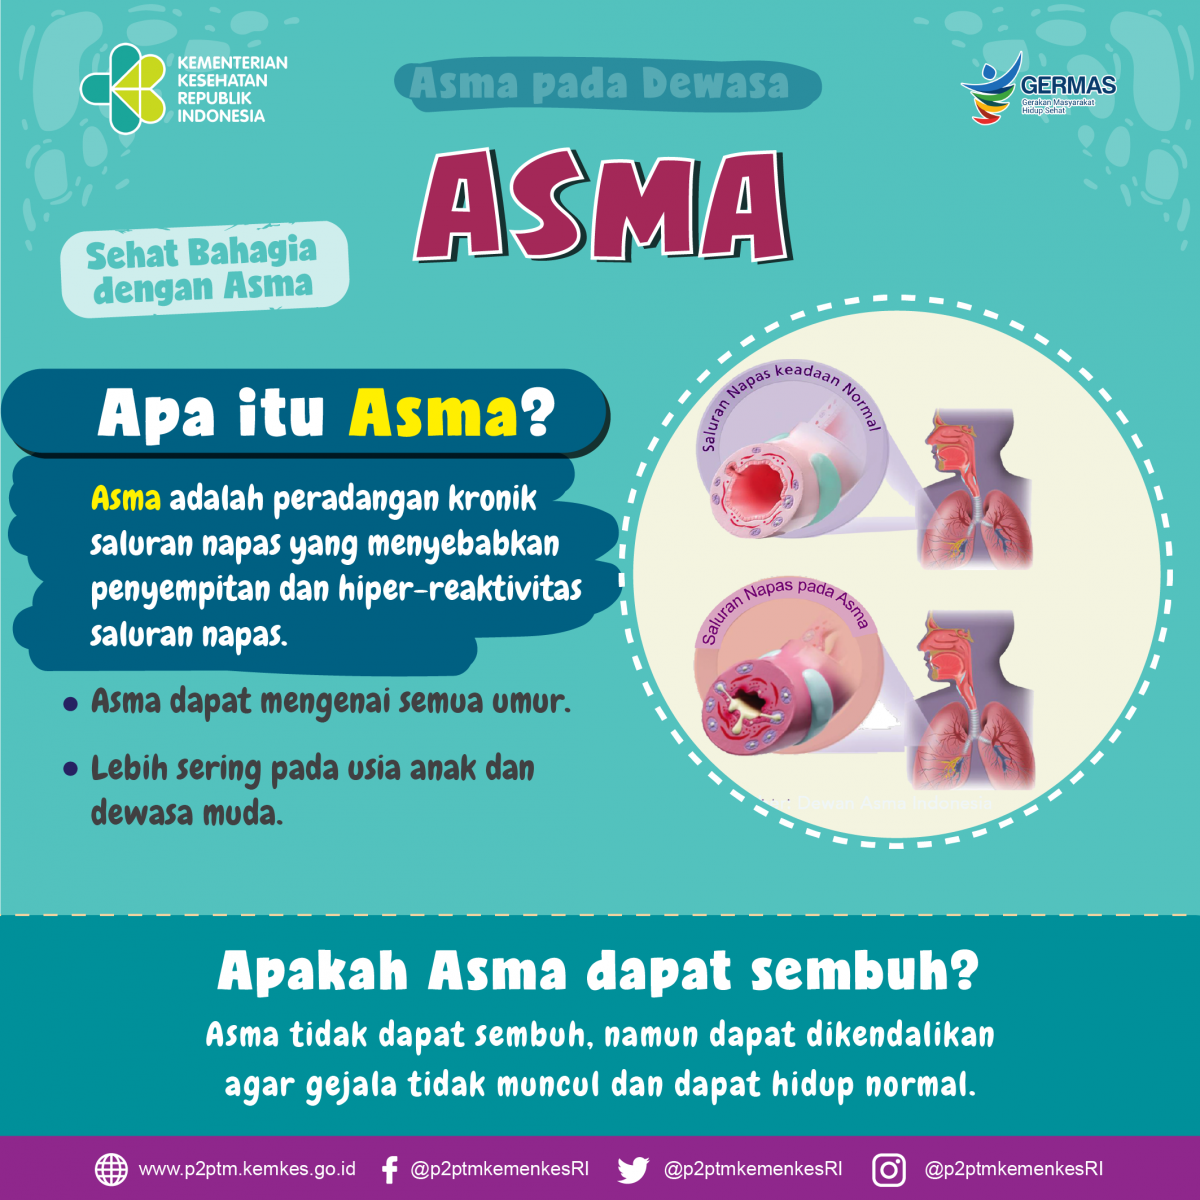 Apakah asma bisa sembuh